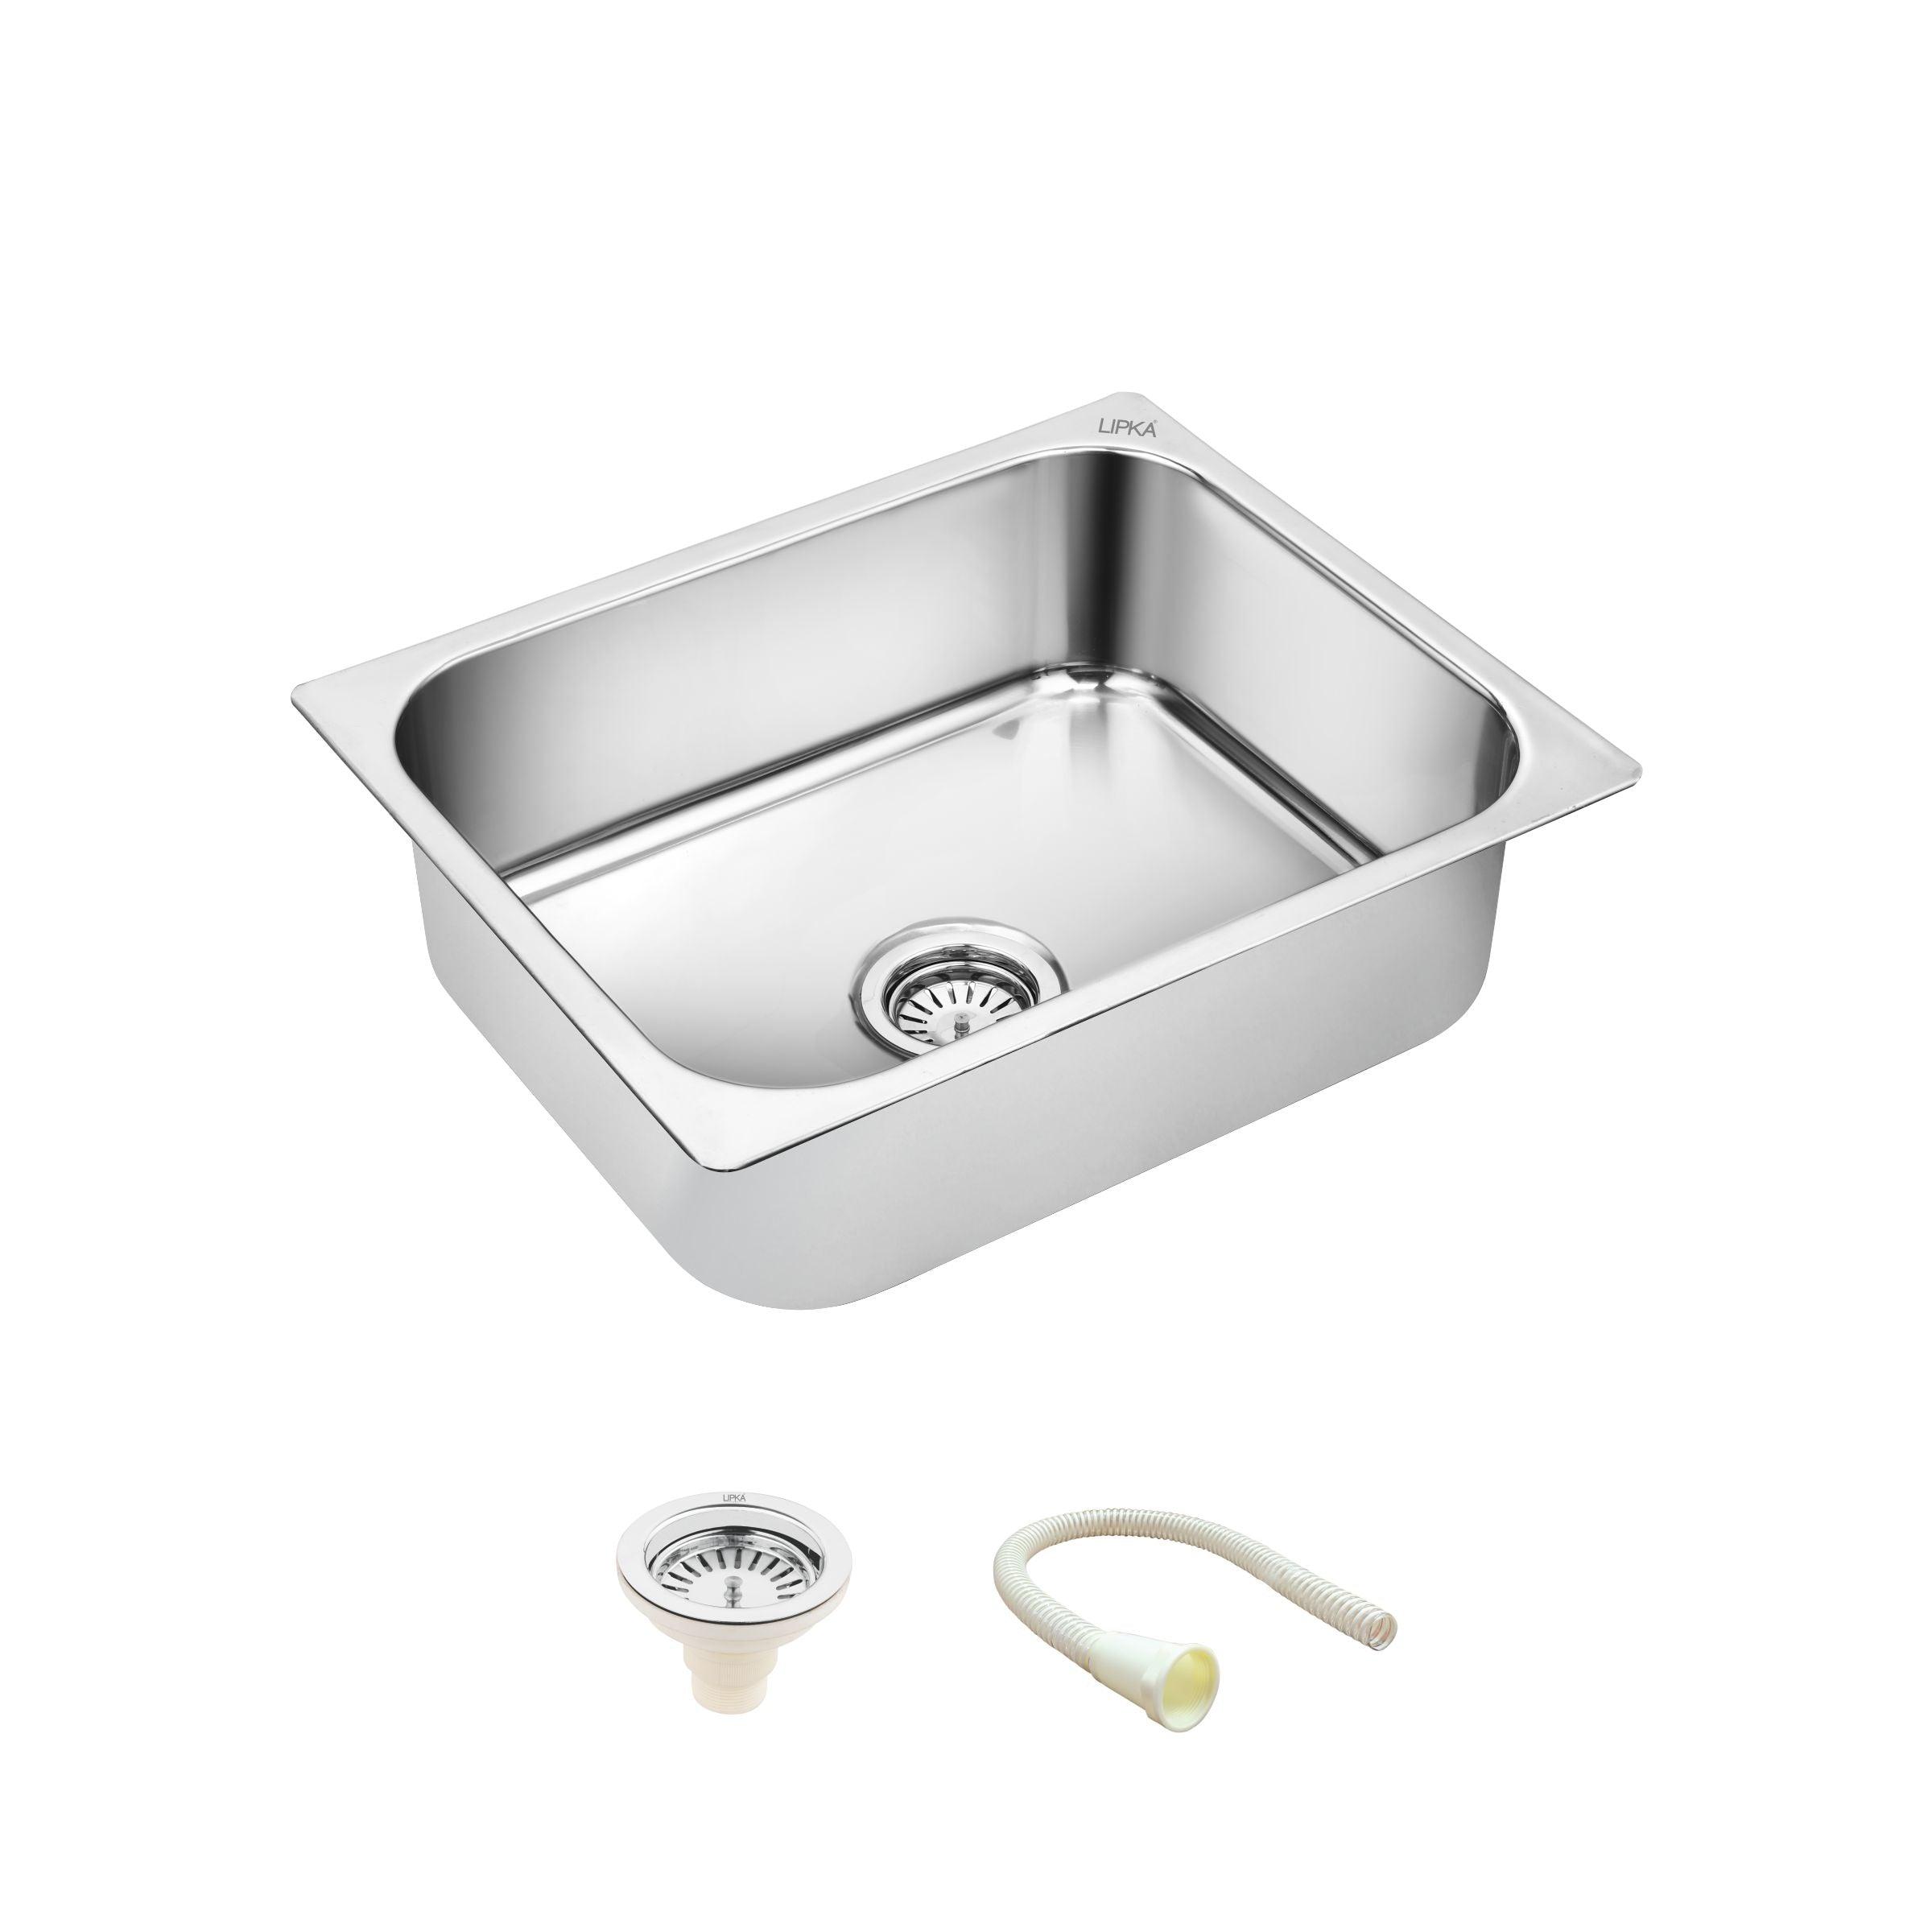 Square Single Bowl Kitchen Sink (27 x 21 x 9 Inches) - LIPKA - Lipka Home